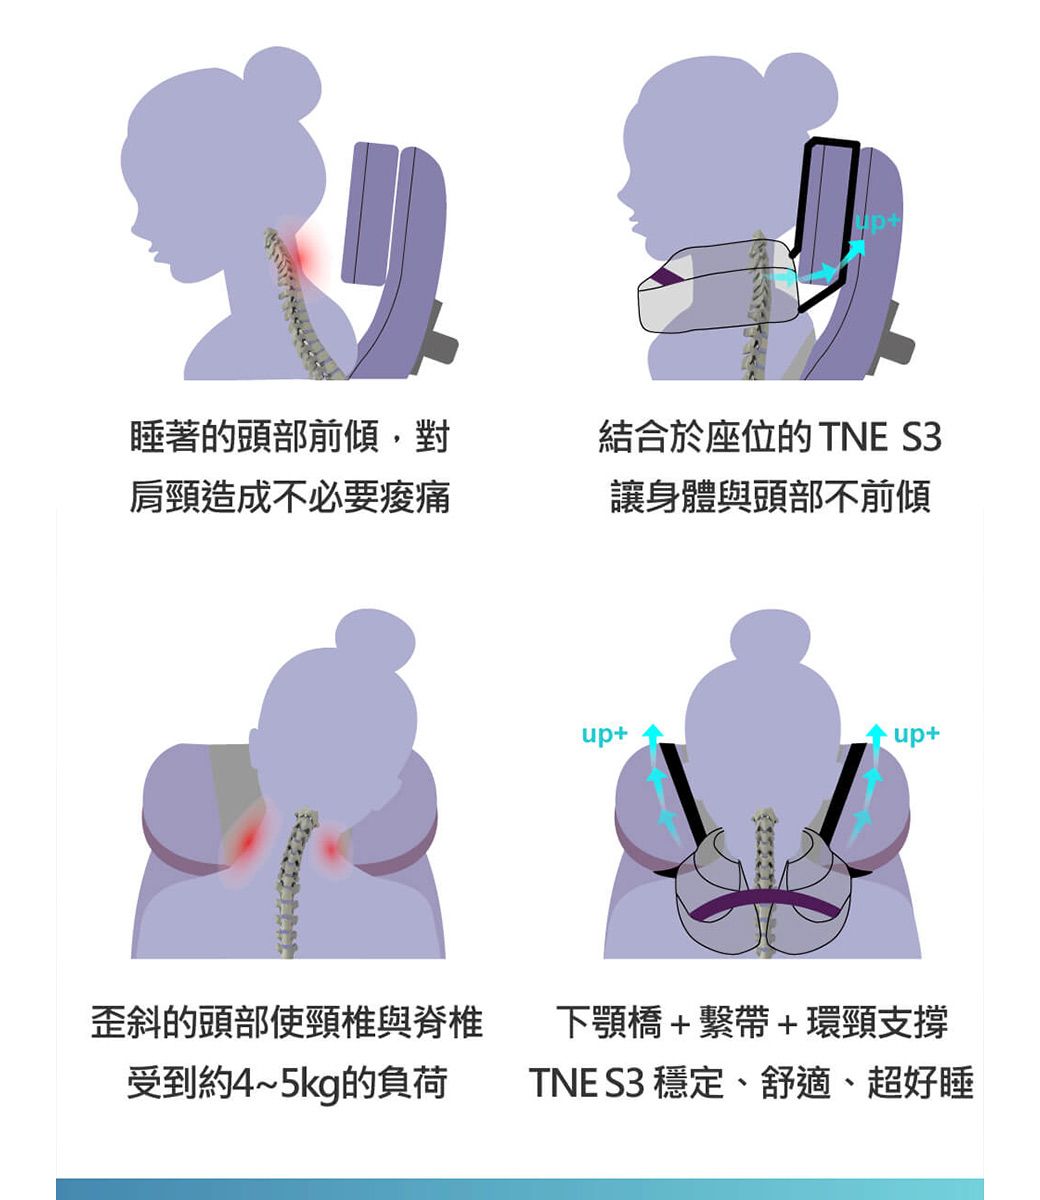 睡著的頭部前傾對肩頸造成不必要痠痛結合於座位的 TNE S3讓身體與頭部不前傾up+up+歪斜的頭部使頸椎與脊椎受到約4~5kg的負荷下顎橋+繫帶+環頸支撐TNE S3 穩定、舒適、超好睡